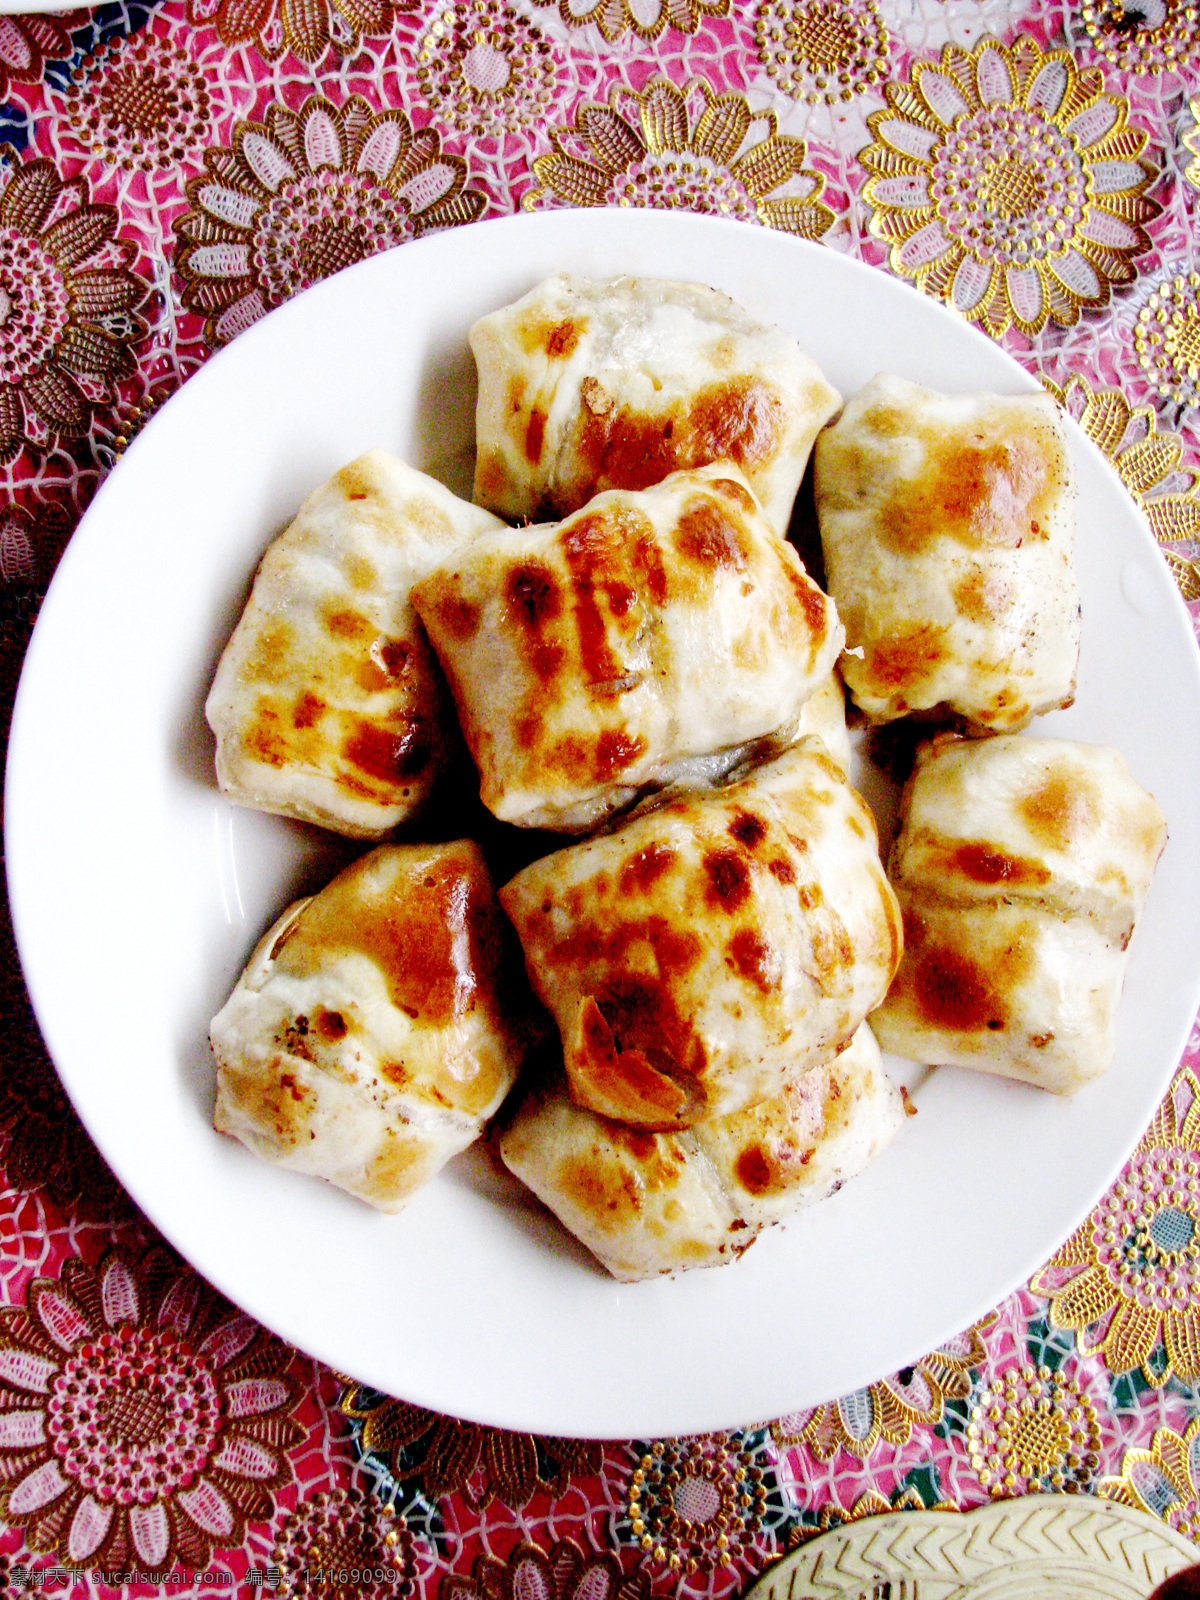 新疆美食 新疆 美食 烤包子 羊肉皮牙子 羊肉烤包子 传统美食 餐饮美食